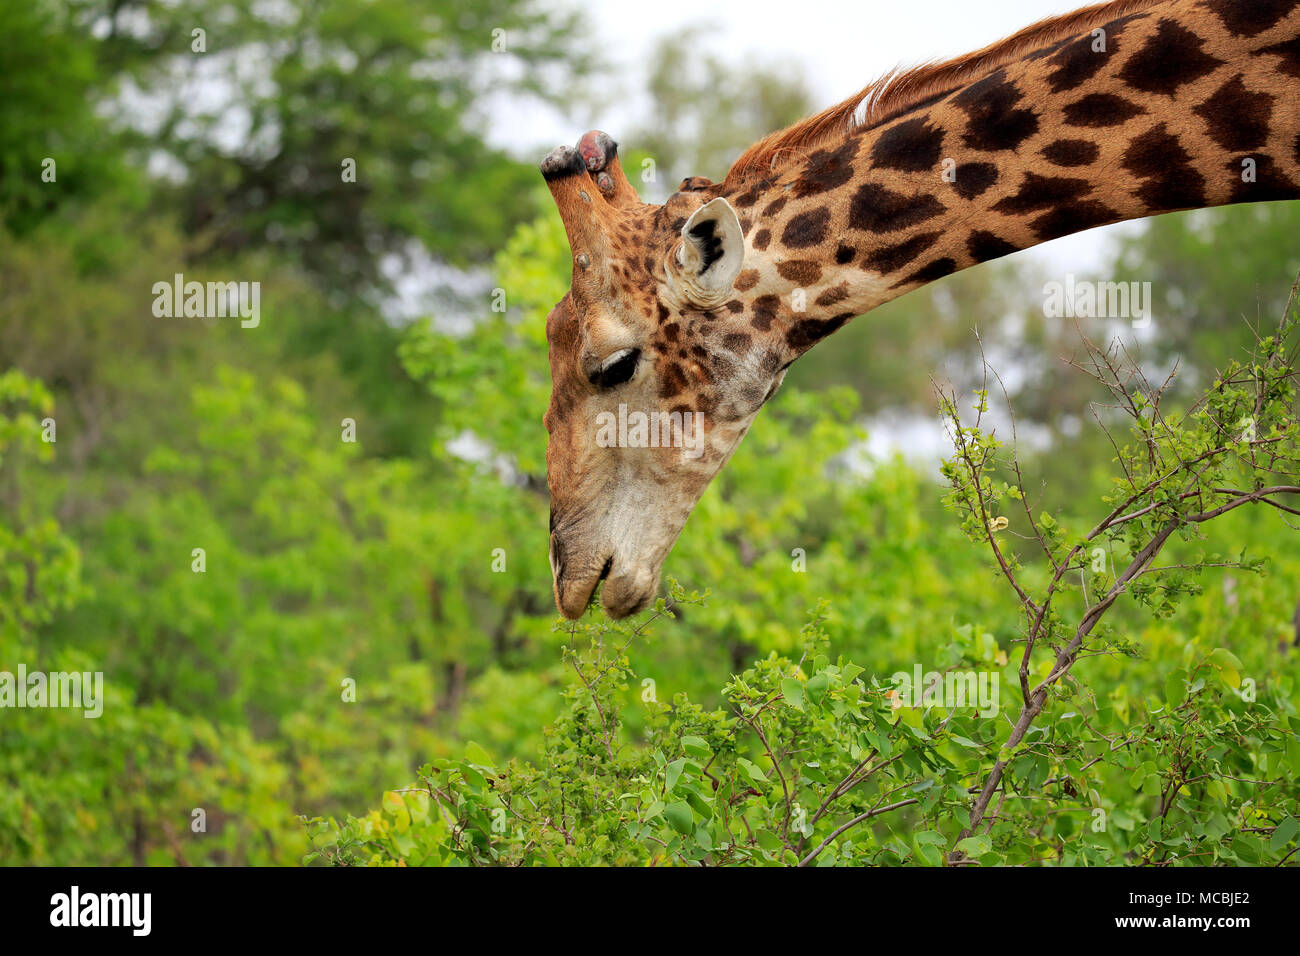 Giraffa meridionale (Giraffa camelopardalis giraffa), Adulto, mangiare, animale ritratto, alimentazione, Kruger National Park, Sud Africa Foto Stock